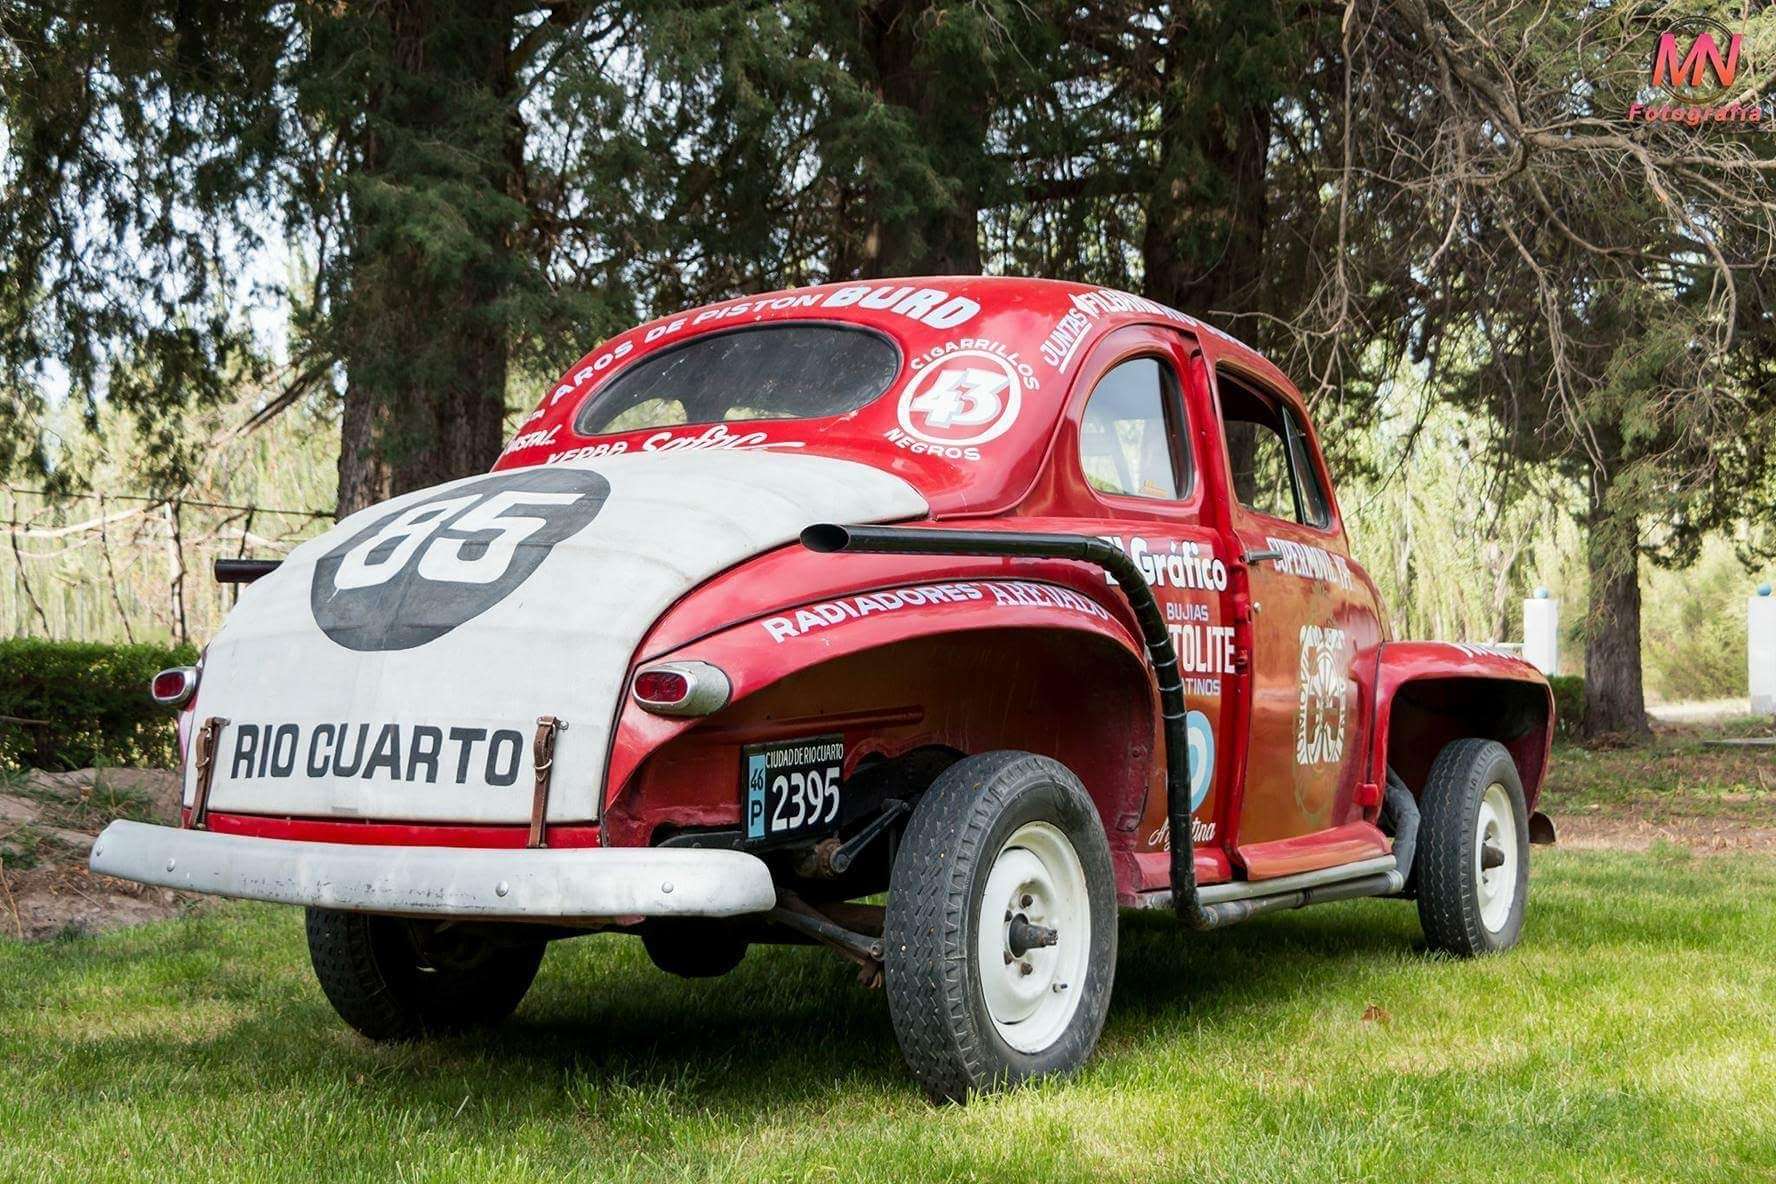 received_504471379914367 - Agrup autos clásicos y antiguos De la Patagonia